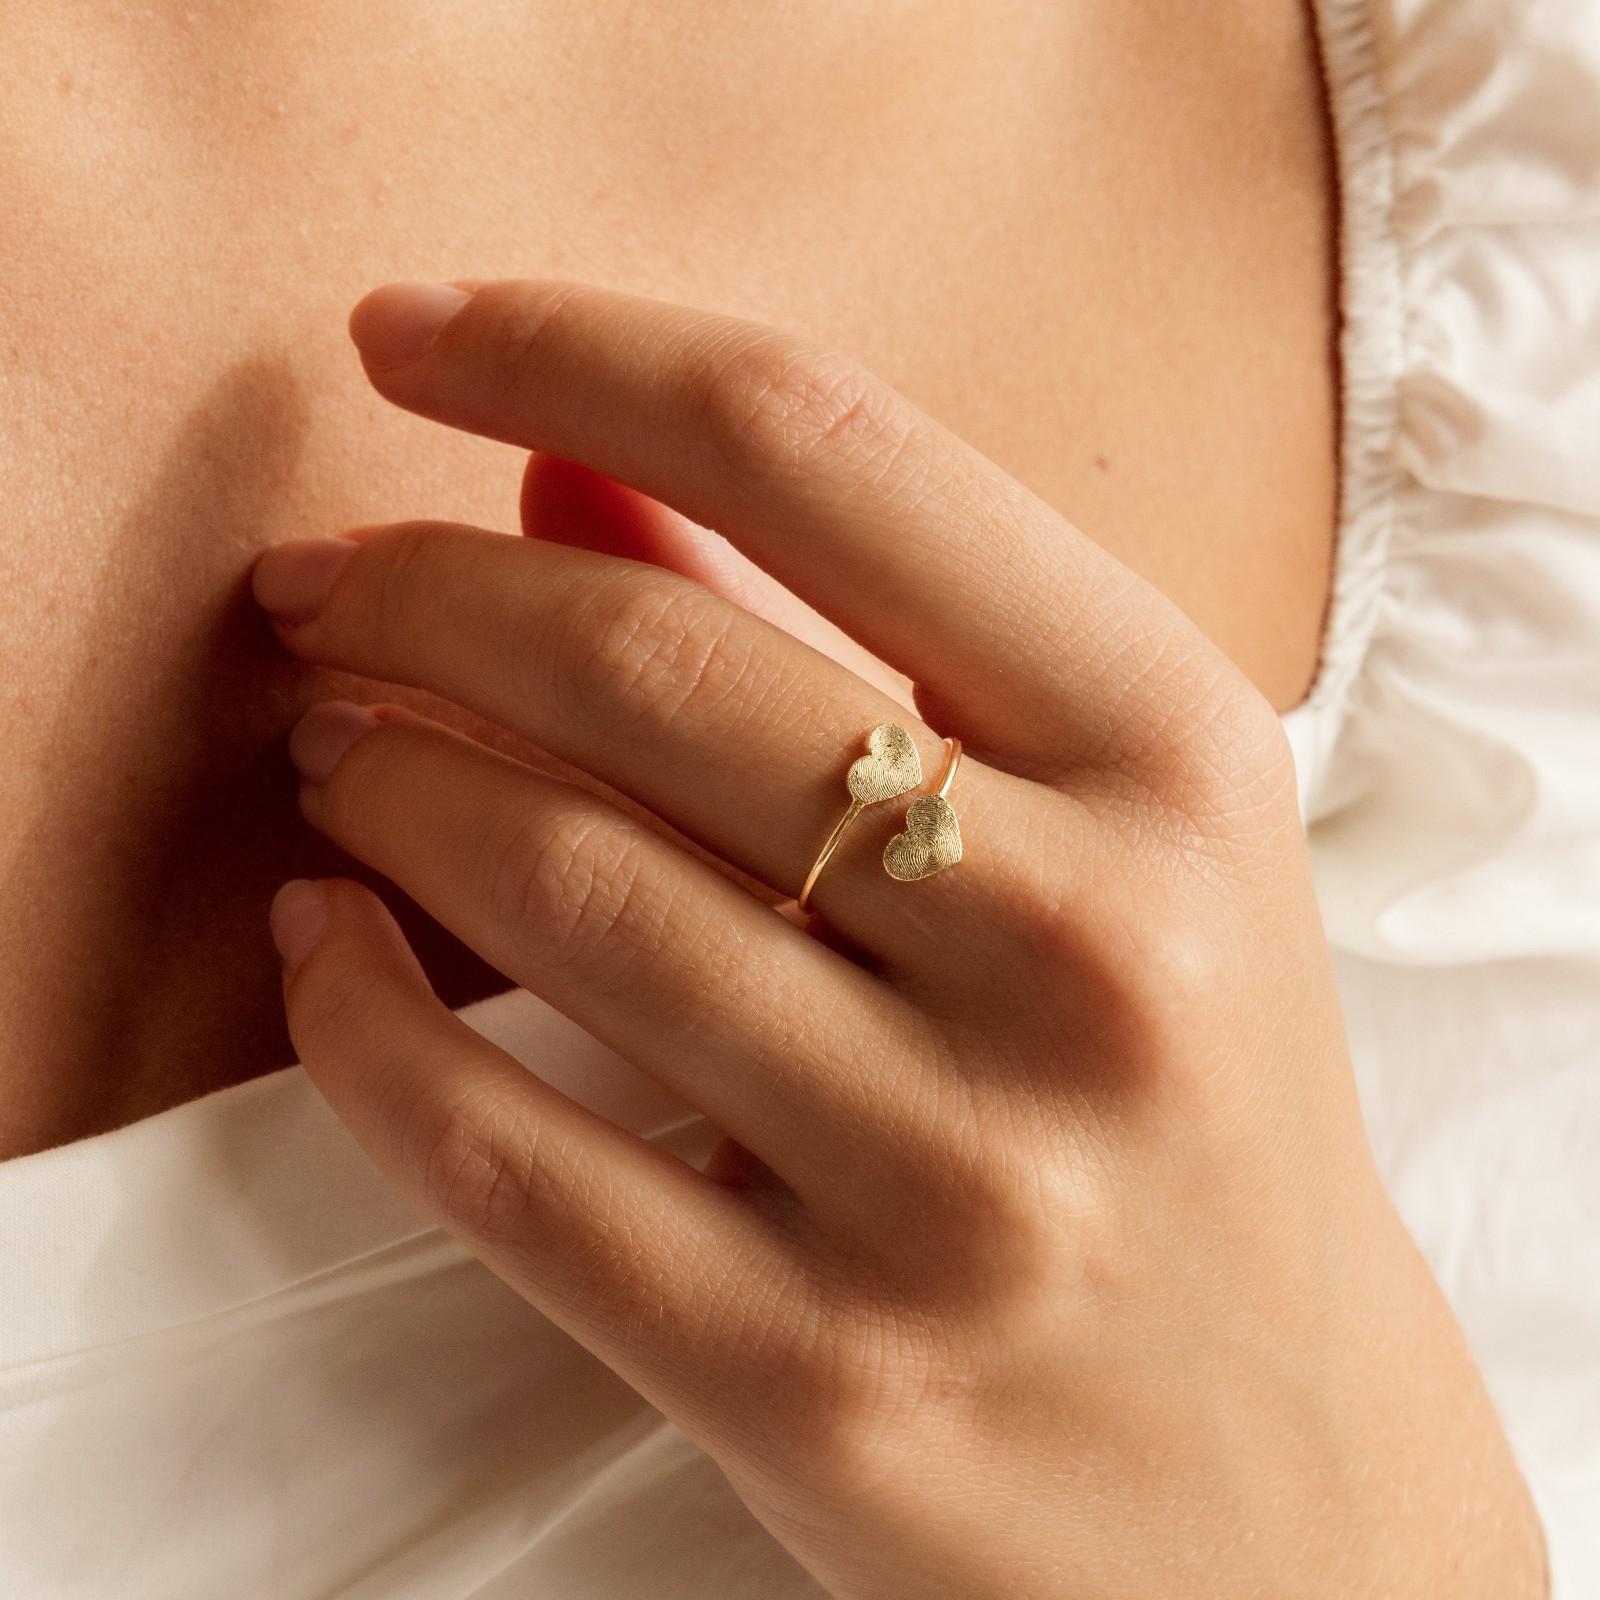 Double Heart Fingerprint Ring, Custom Fingerprint Ring, Personalized Fingerprint Jewelry, Wrap Coil Ring, Loss Memorial Gift